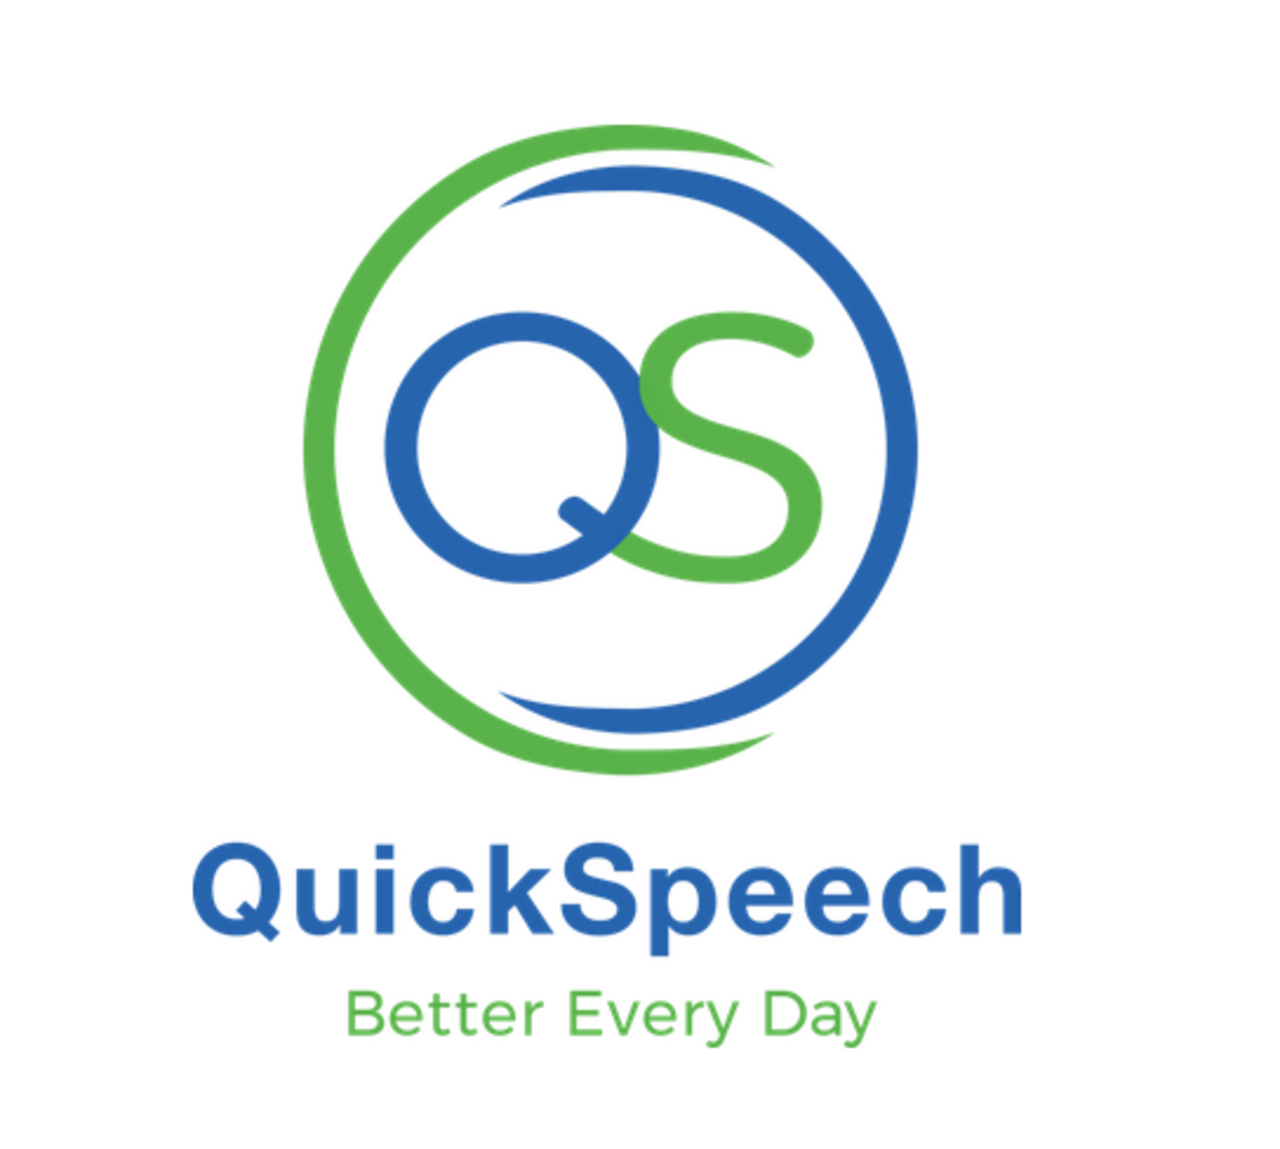 eisq Partner QuickSpeech